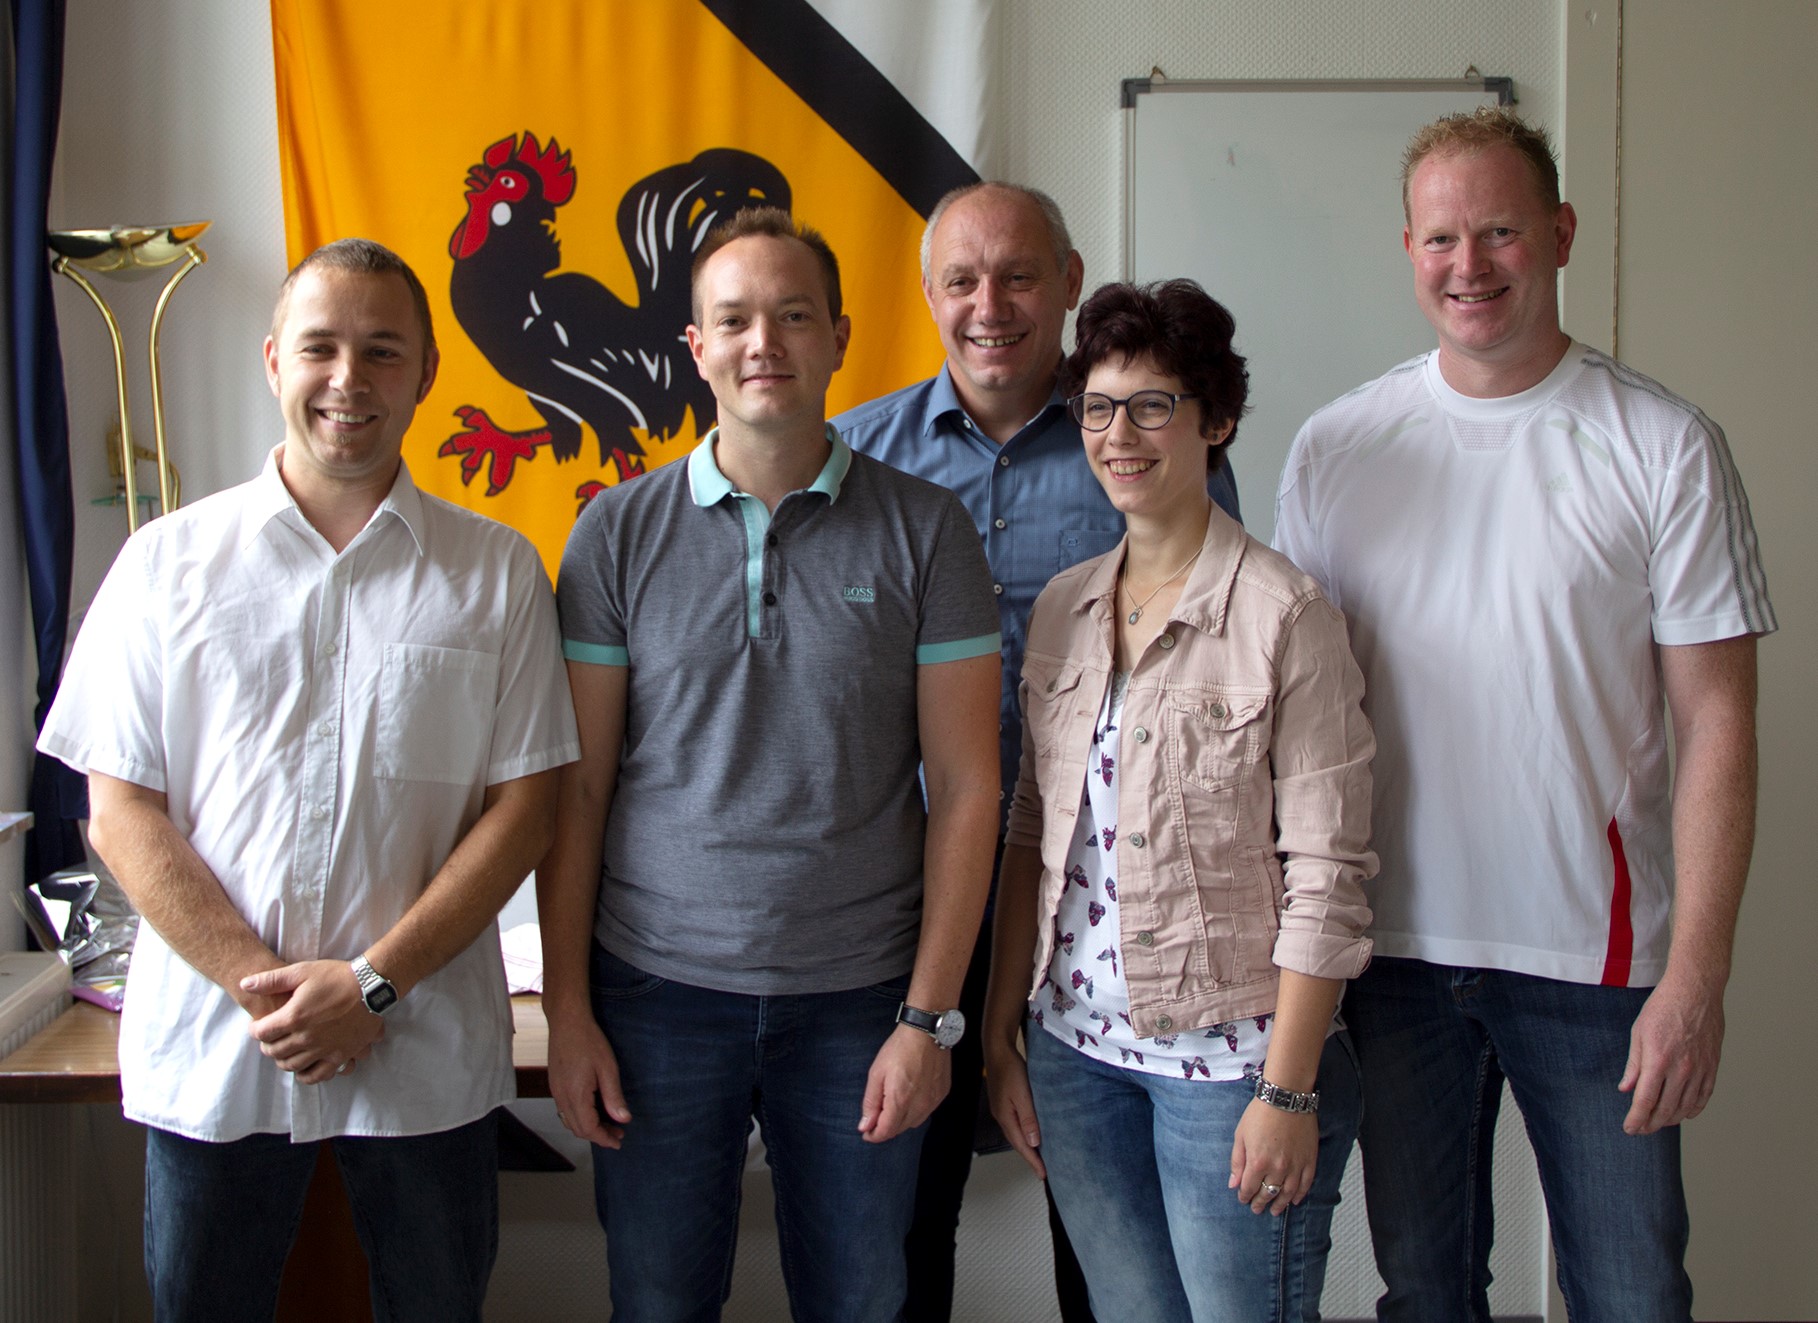 Dirk Vohl mit den neuen Ratsmitgliedern (Fotos: OG)

